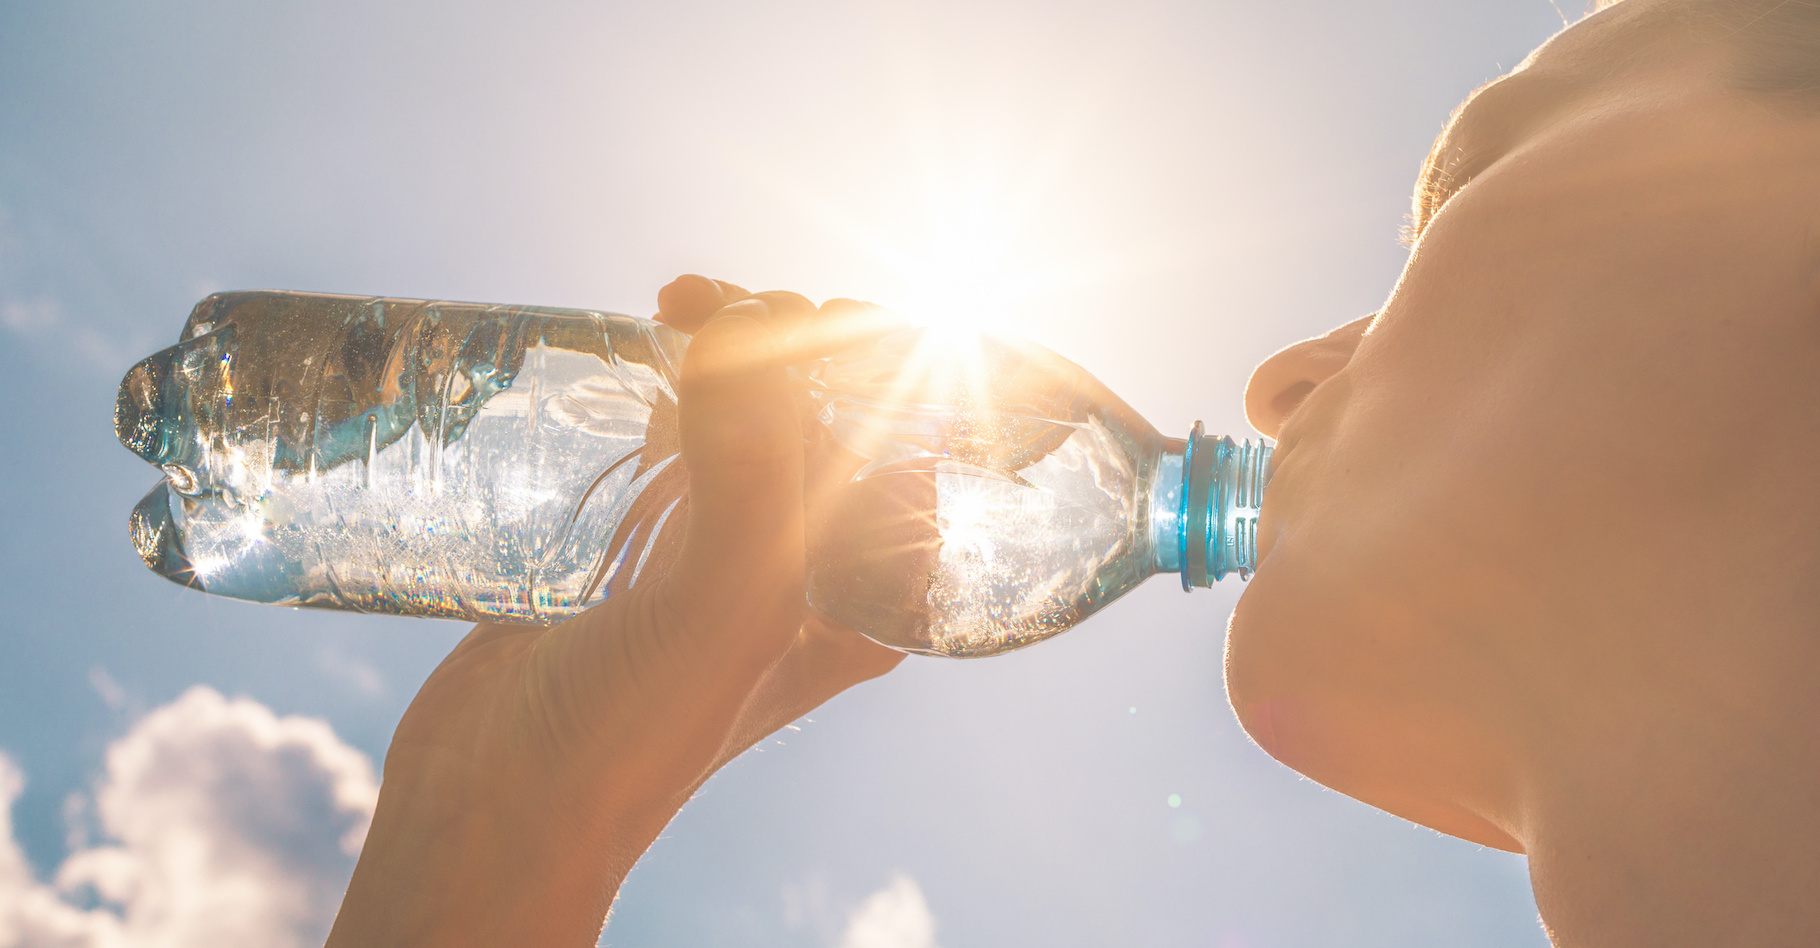 L’eau gazeuse apparait plus désaltérante que l’eau plate. Une sensation fausse qui peut nuire à notre hydratation. © kieferpix, Adobe Stock